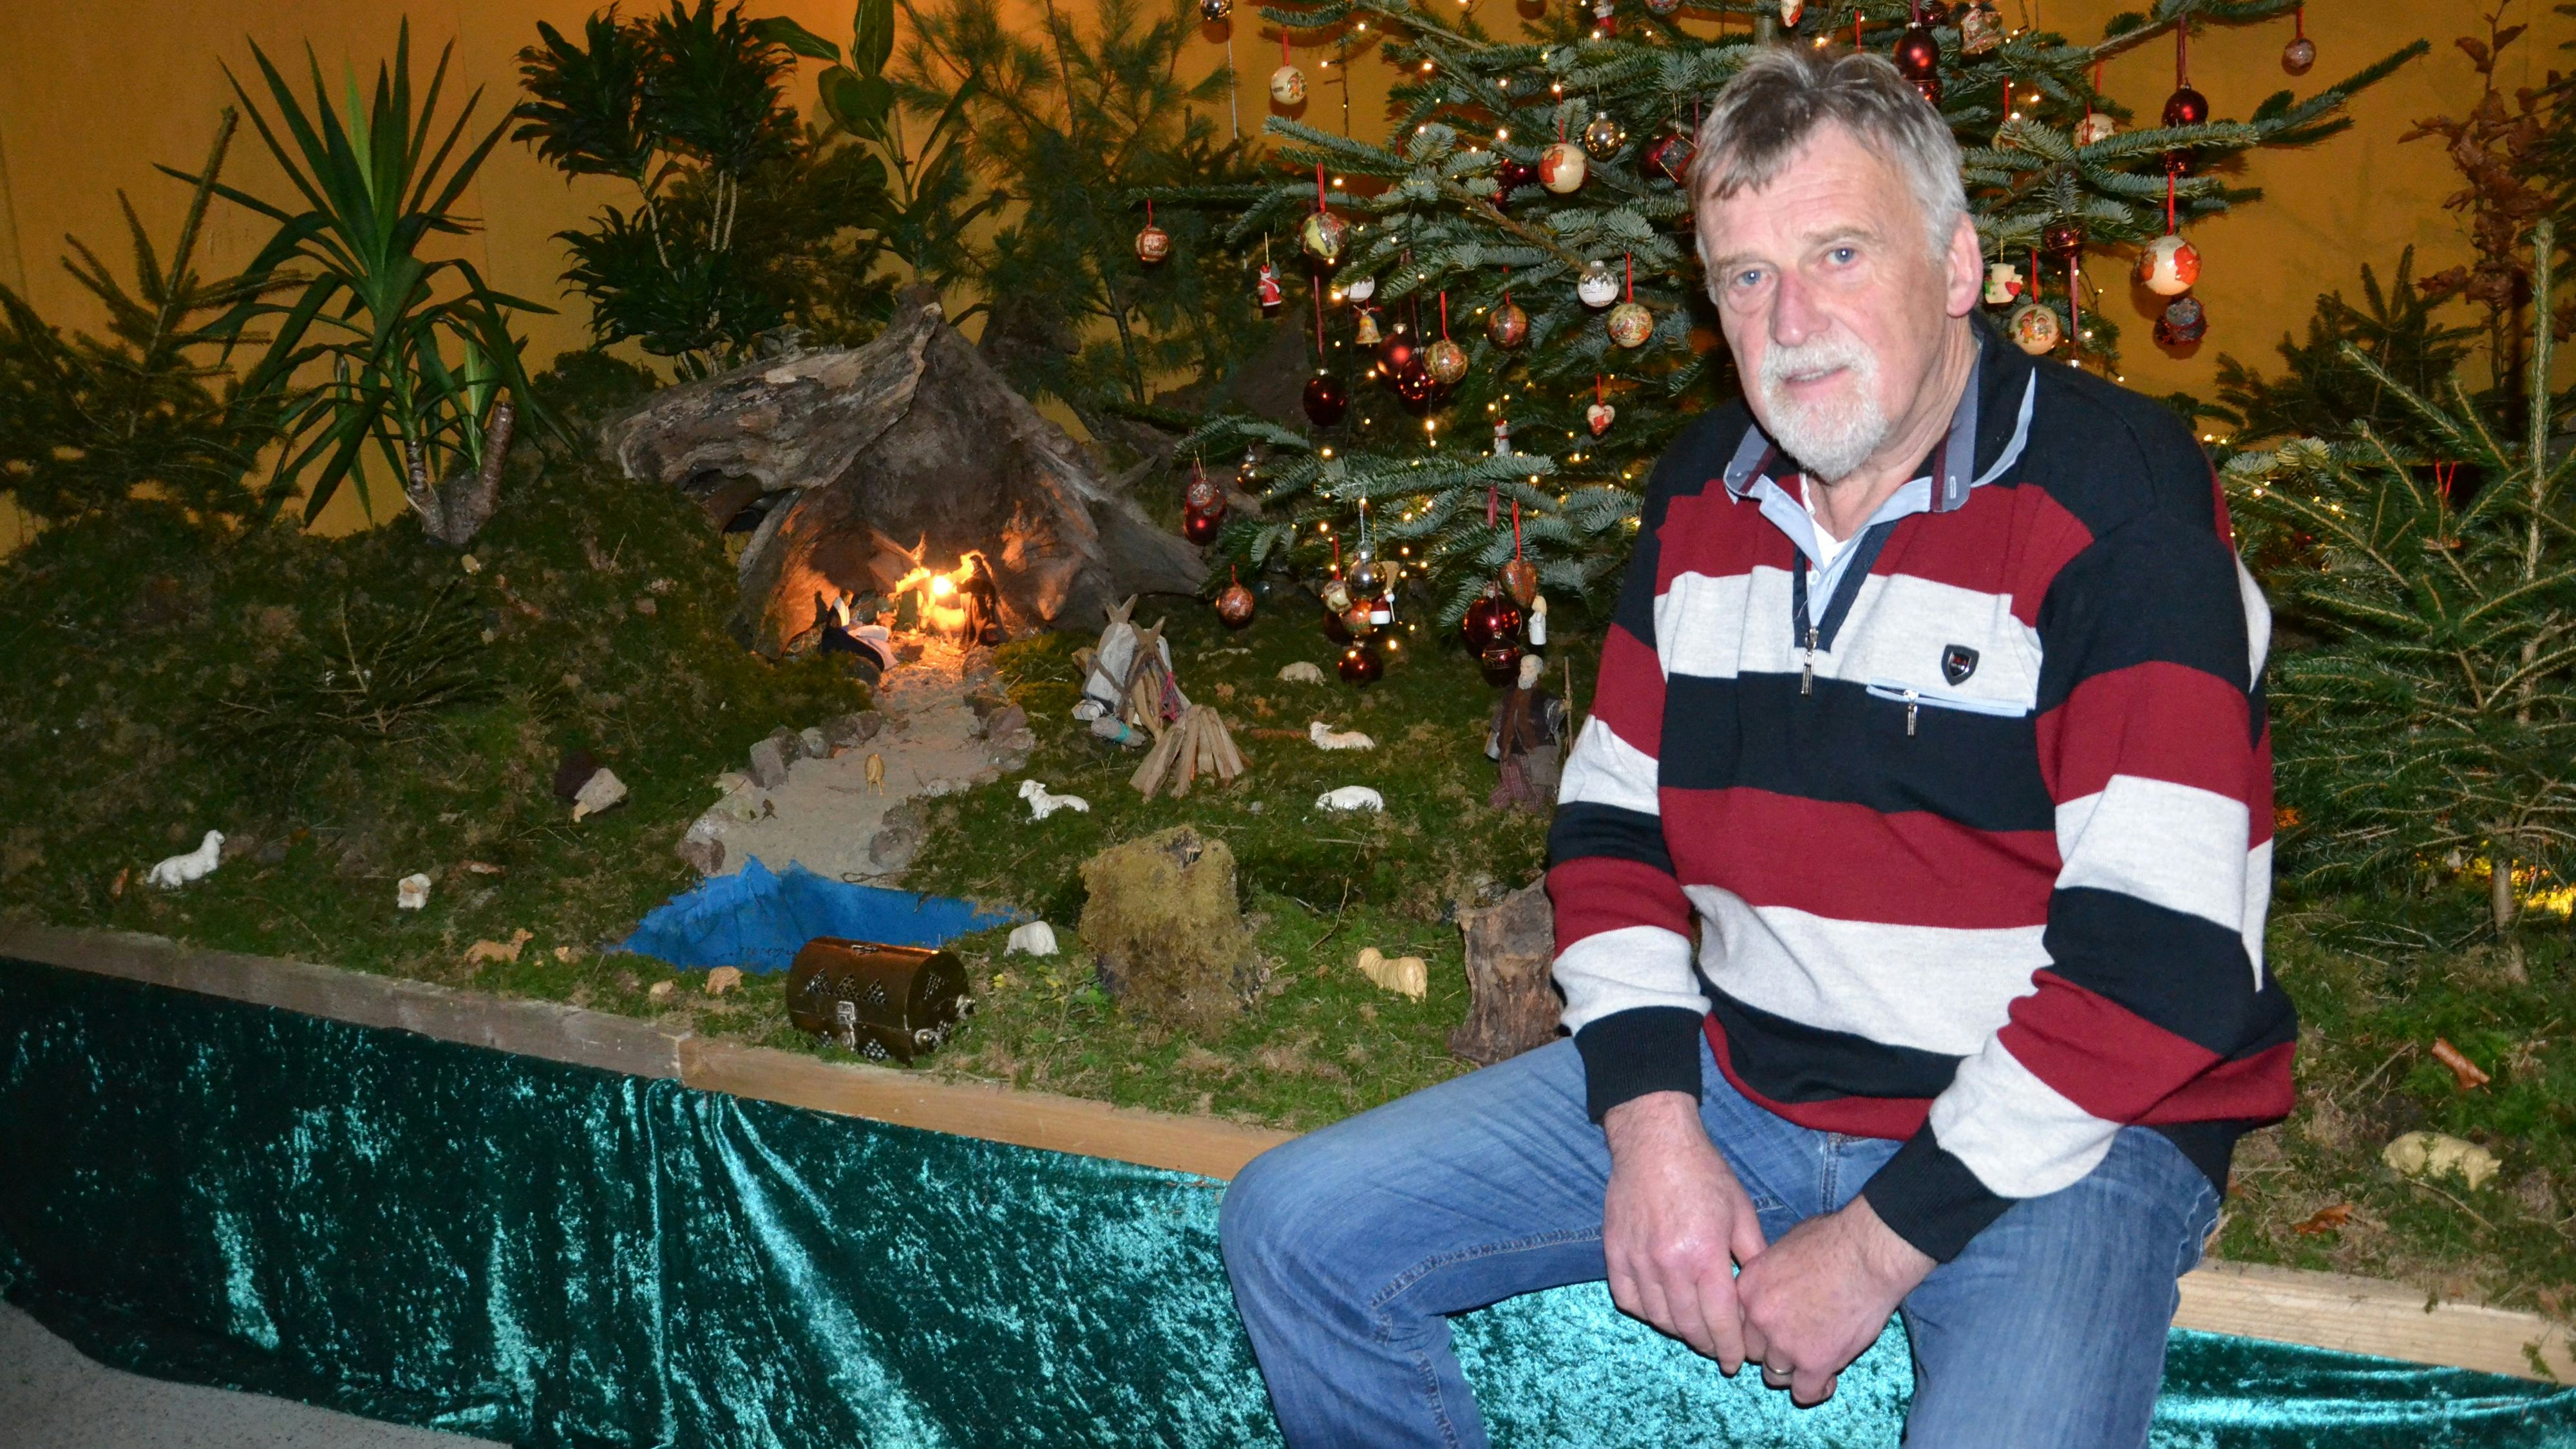 Kistenweise Material herangeschleppt: Seit 26 Jahren baut Helmut Ellers aus Holtrup seine Weihnachtskrippe mit viel Naturmaterial auf. Foto: Bernd Götting